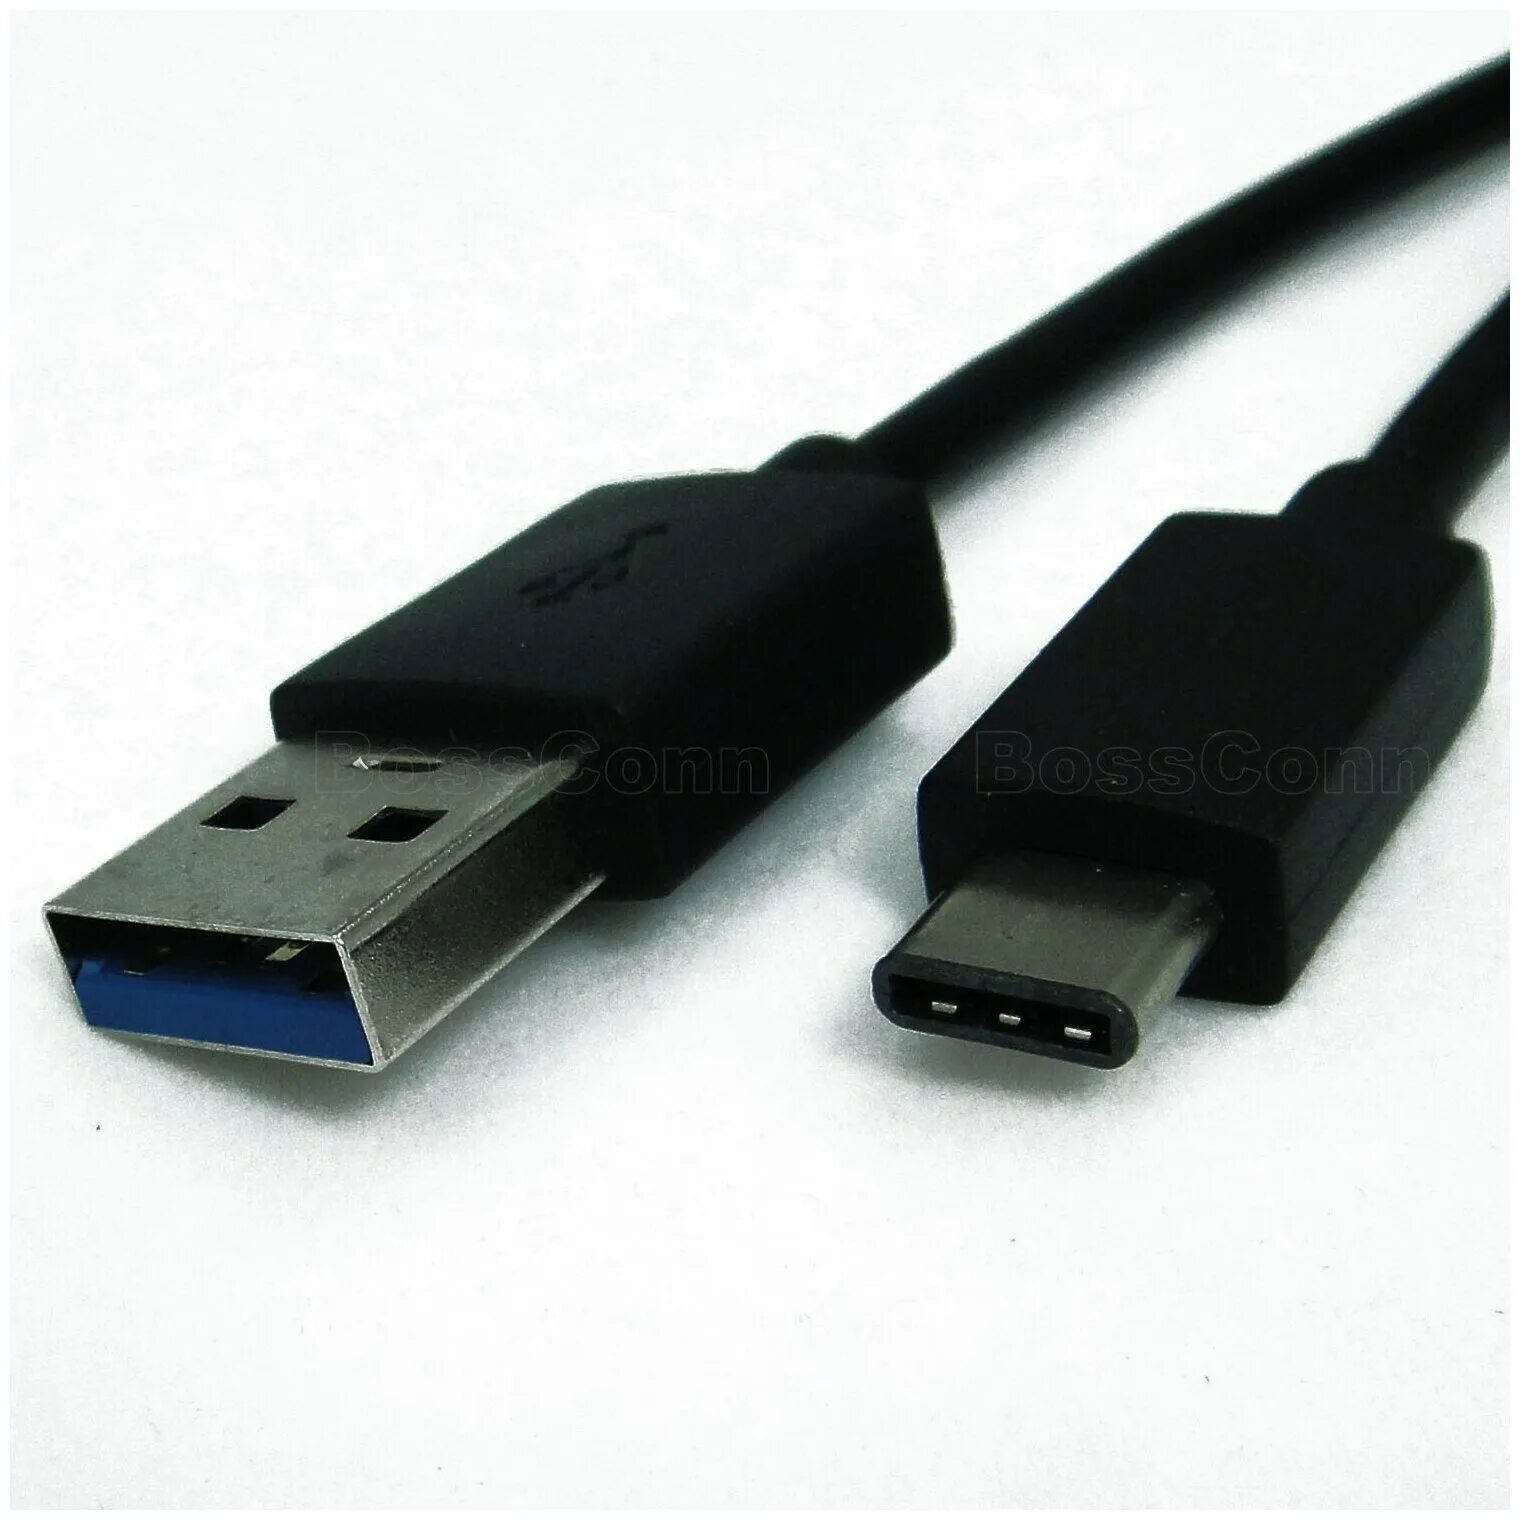 Usb type c d. USB 3.0 USB Type-c. Юсб 3.1 Type c. USB Type-c, USB 3.0 Type-a. Разъемов USB 3.0 (Type-c).